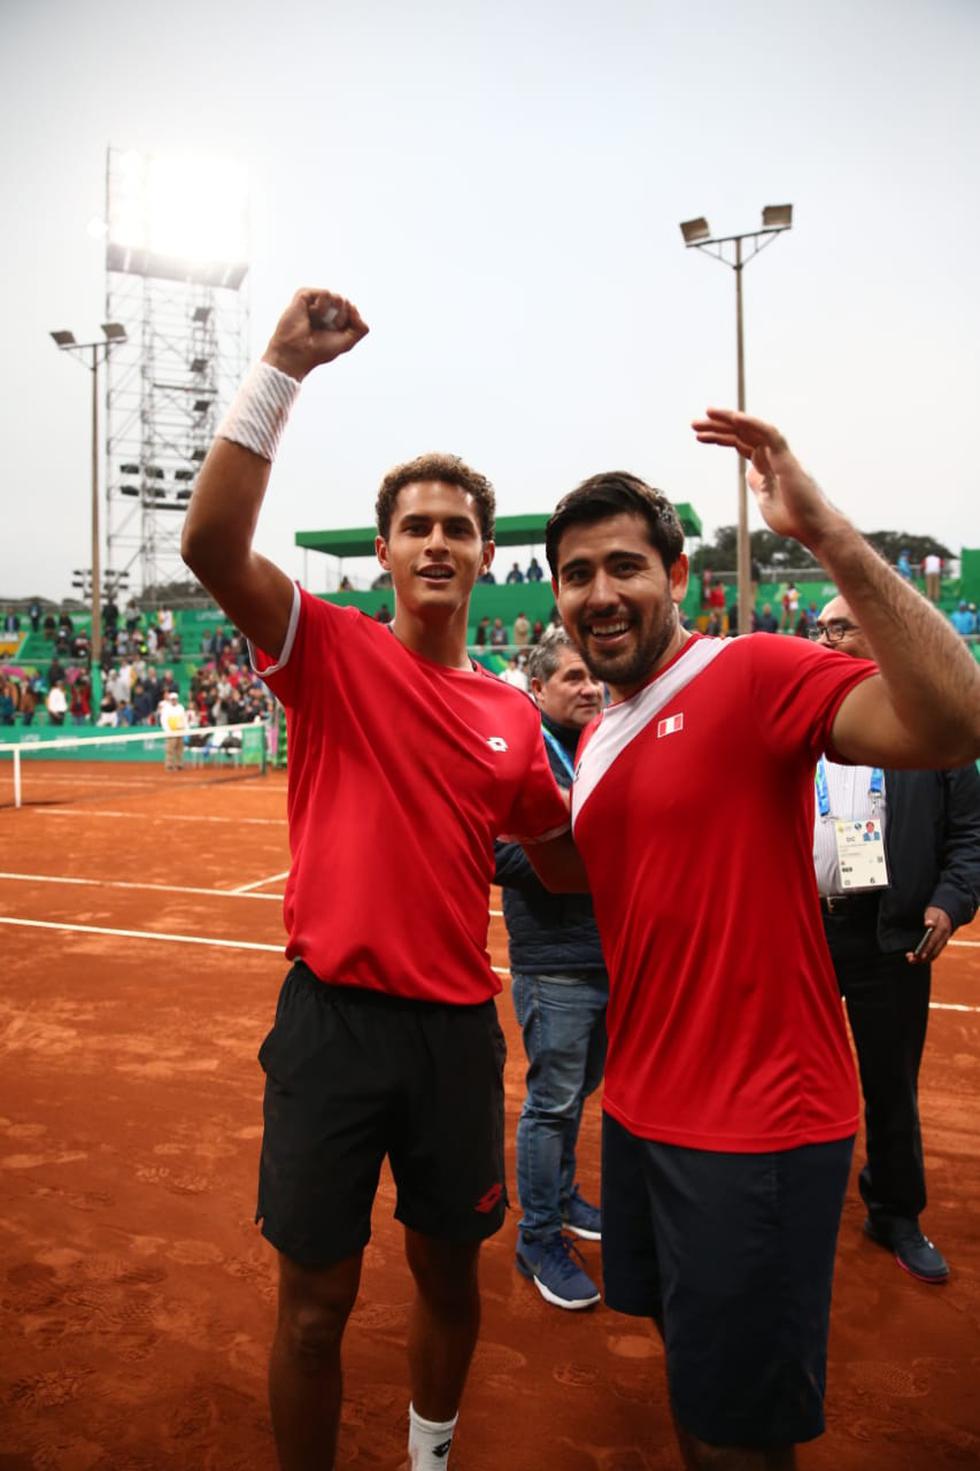 La dupla conformada por Sergio Galdos y Juan Pablo Varillas en Tenis categoría dobles masculinos consiguieron la medalla de bronce. (Giancarlo Ávila)